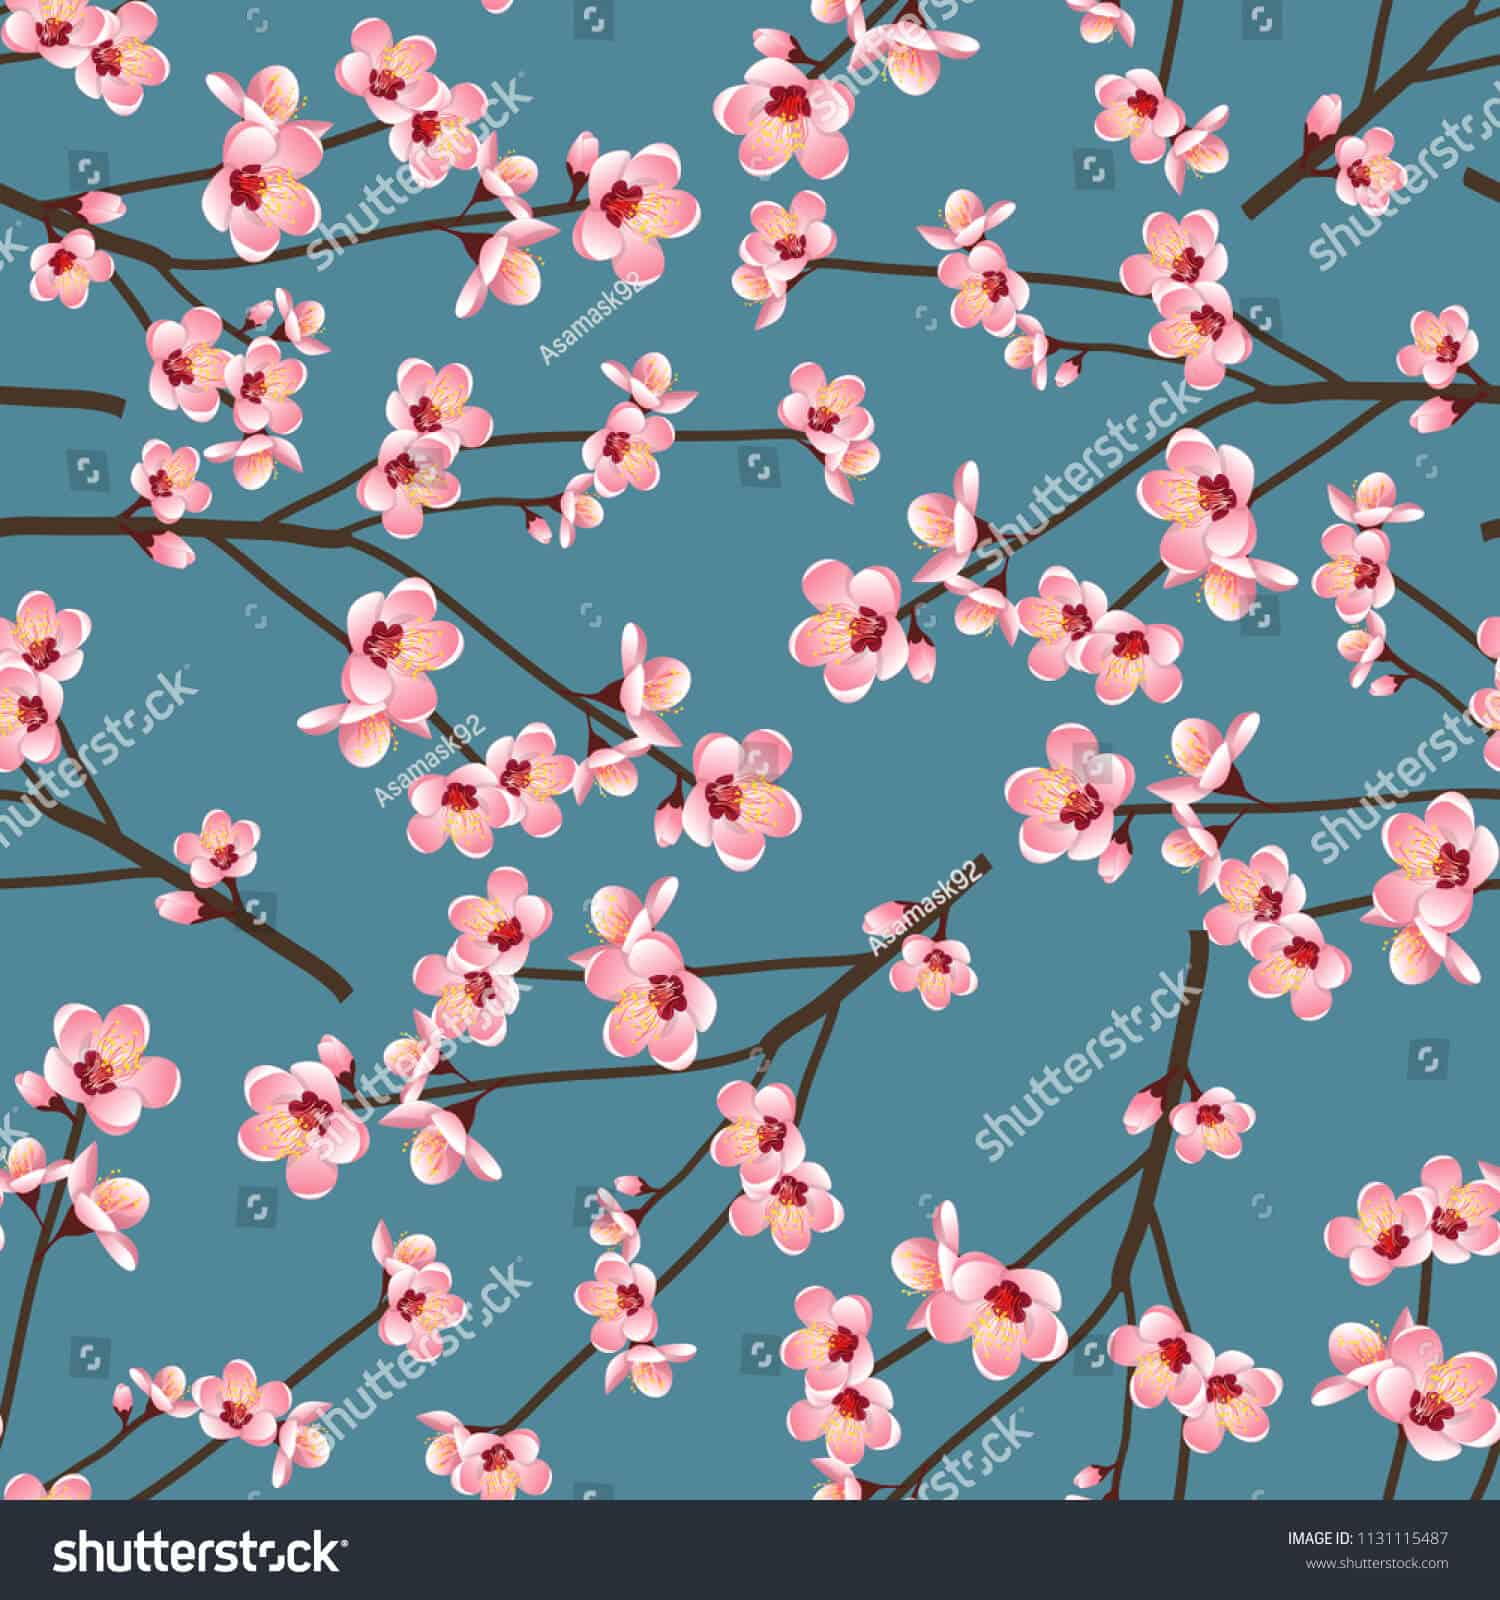 100 ngàn hình ảnh hoa đào chất lượng cao trên Shutterstock